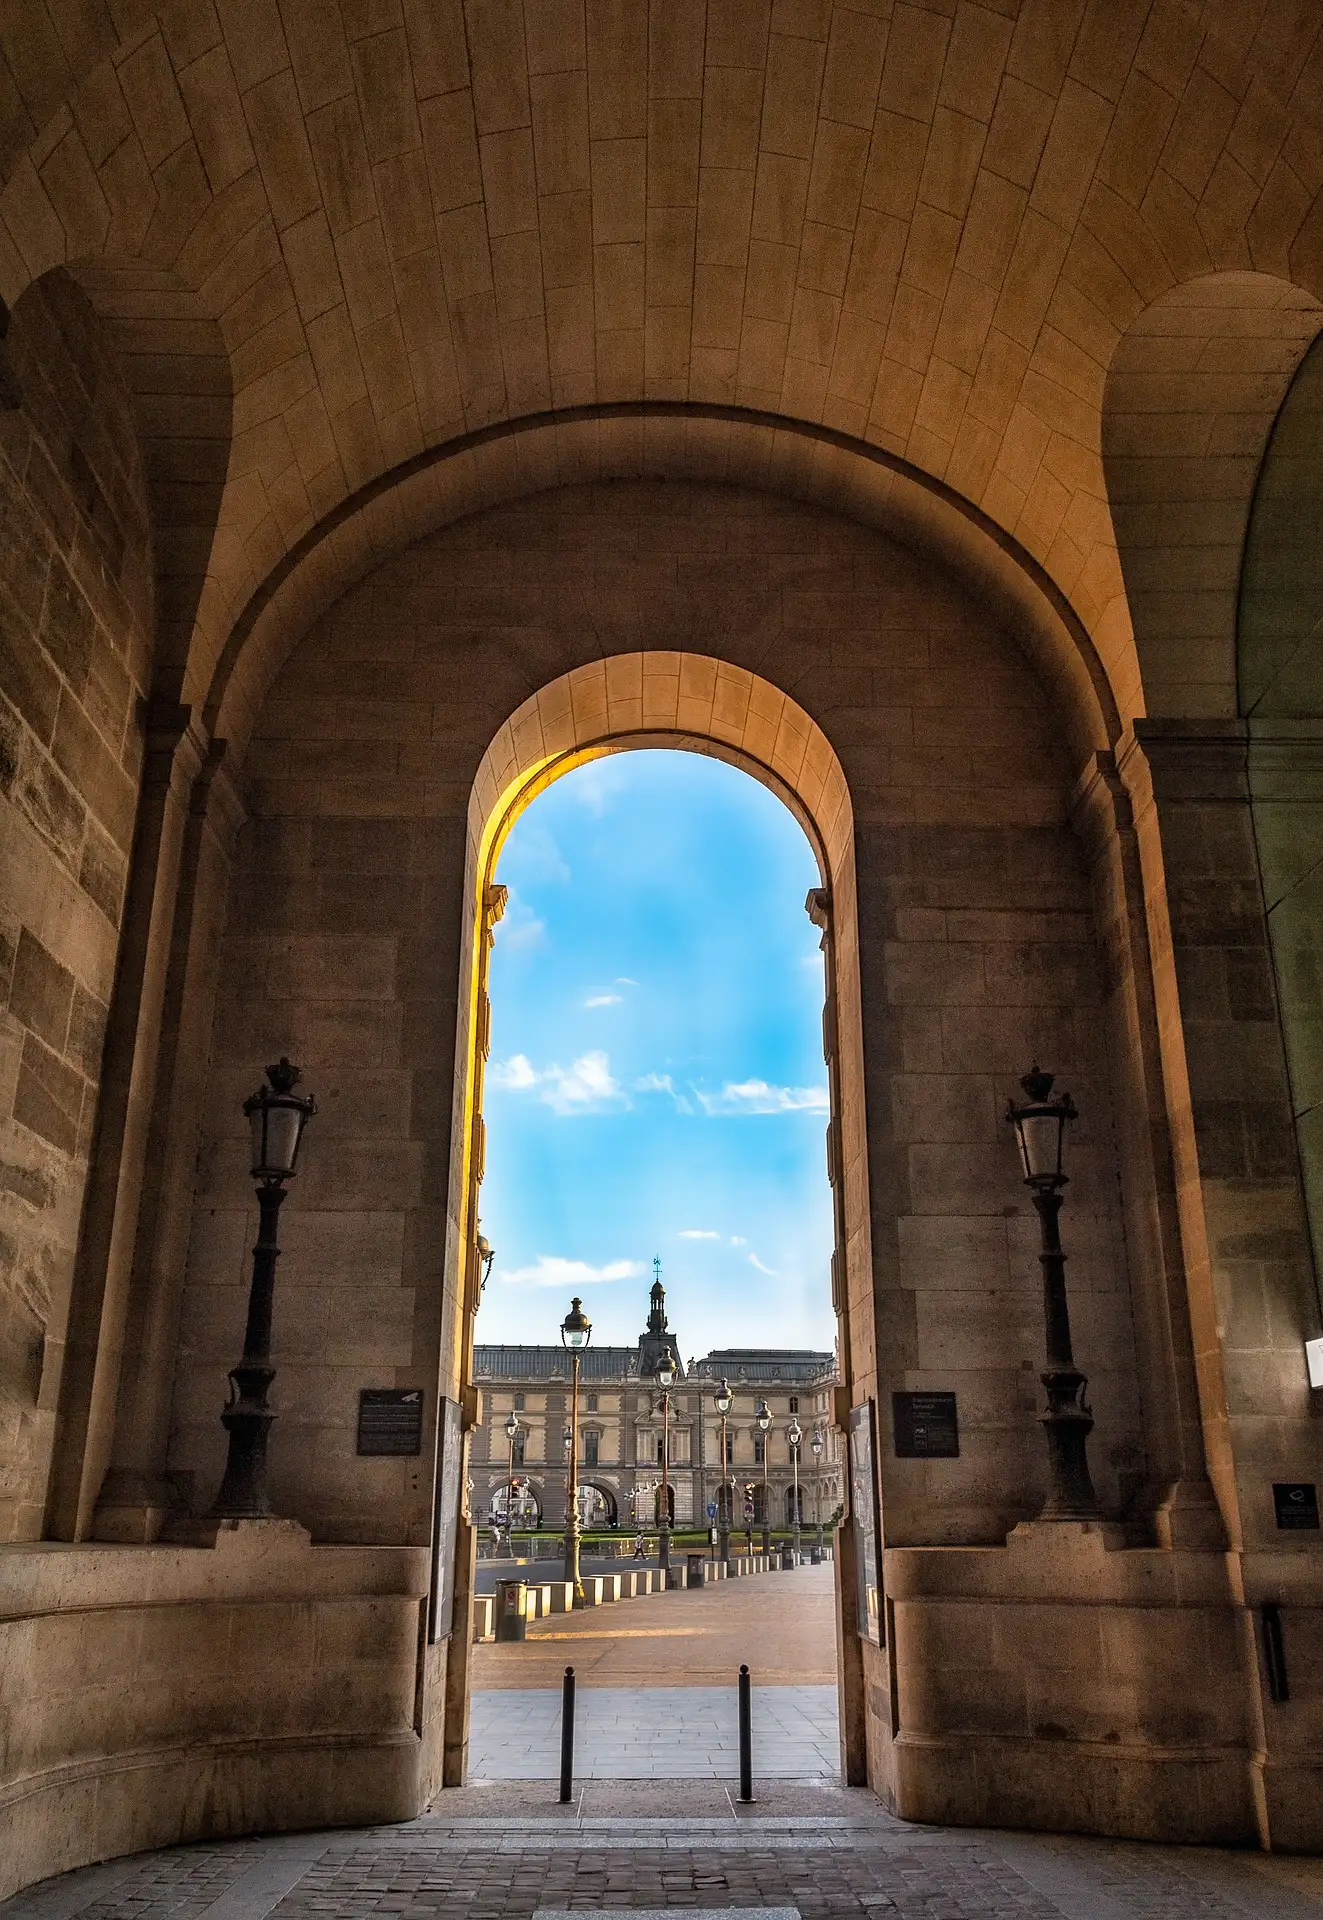 Le Louvre, Paris, France © Murilo Silva